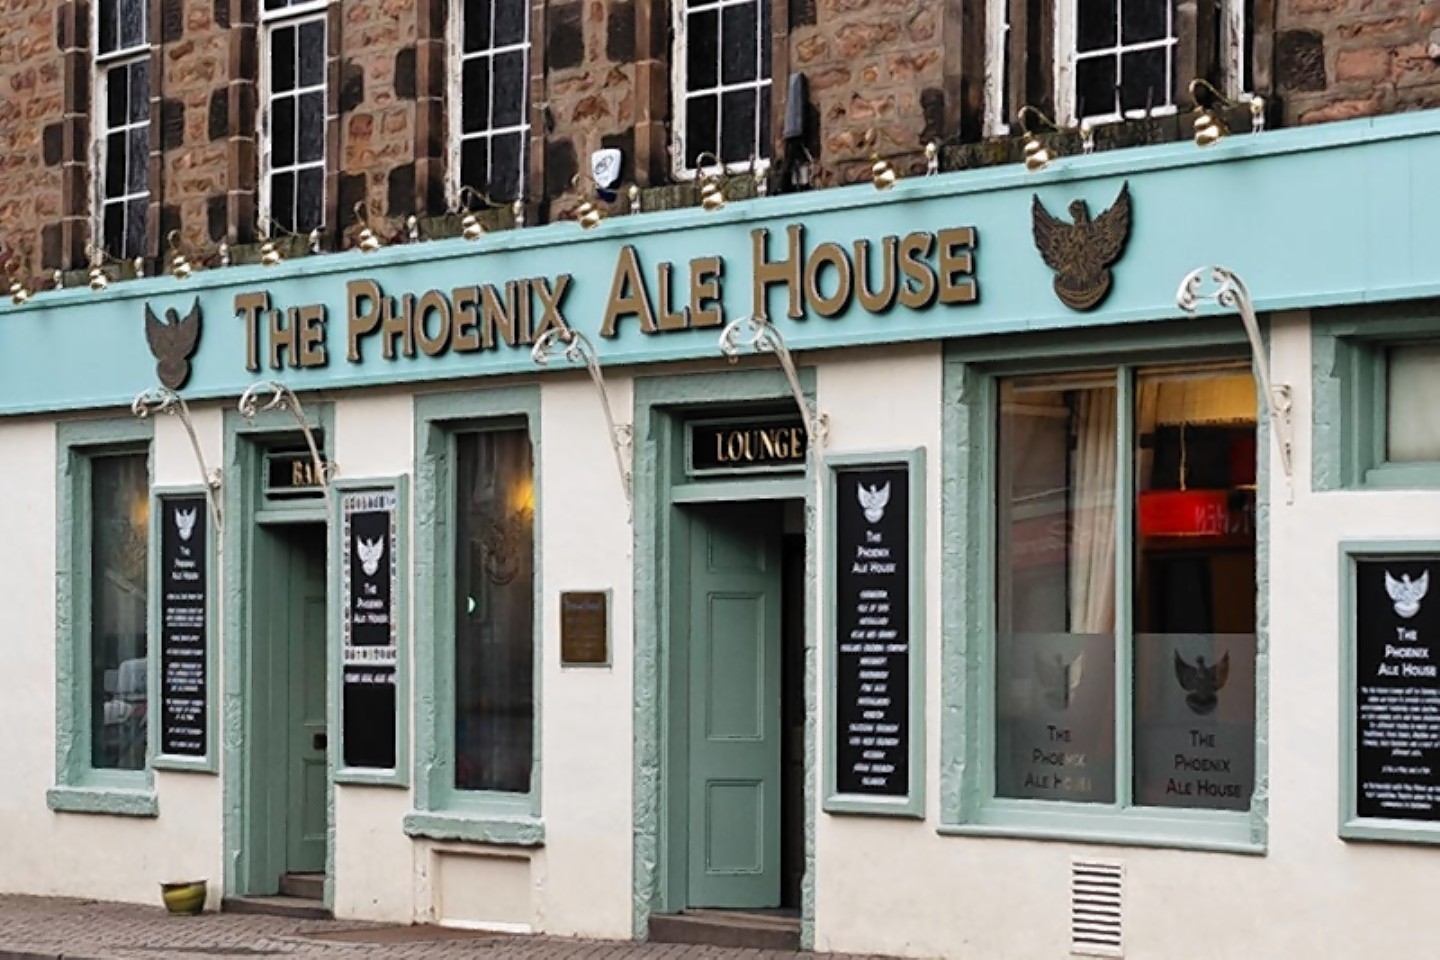 The Phoenix Ale House